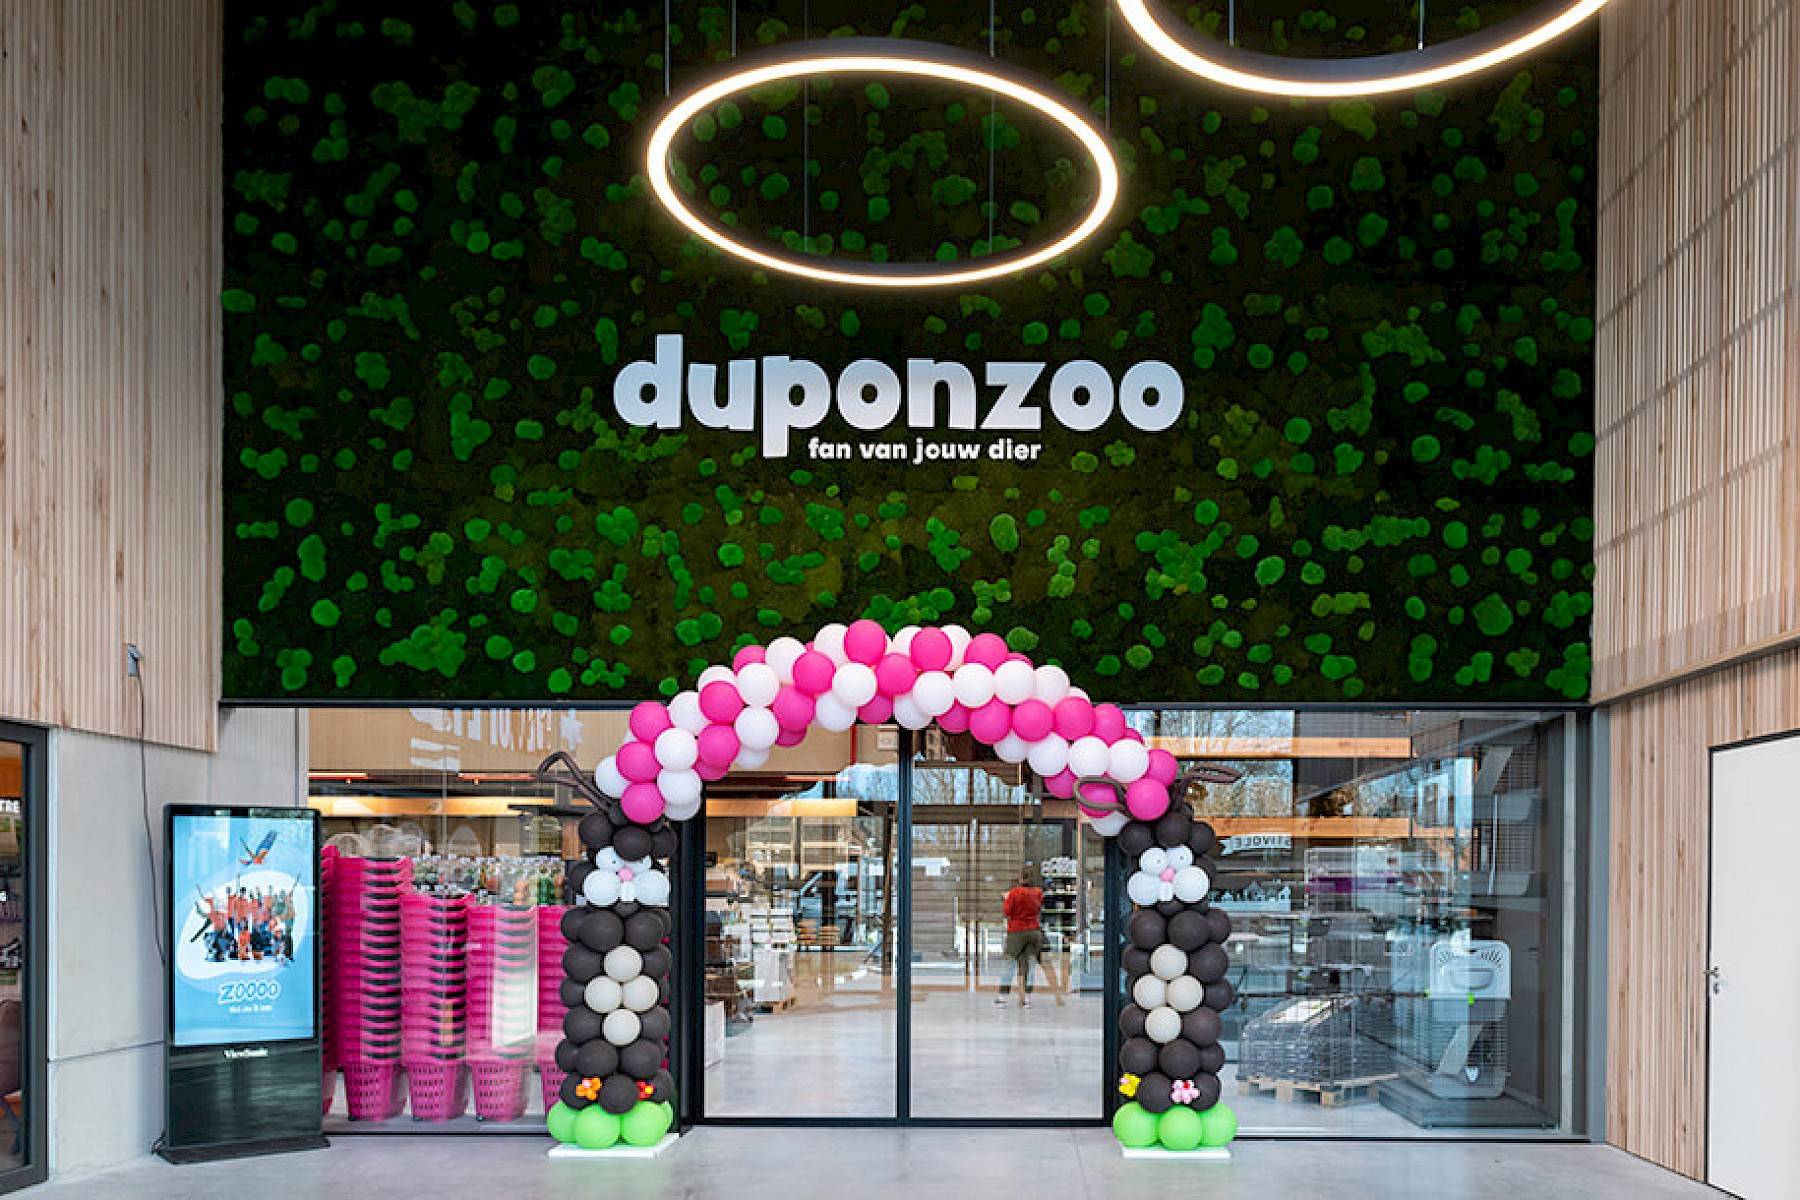 De ingang van de winkel van Duponzoo, feestelijk versierd met witte en roze ballonen.